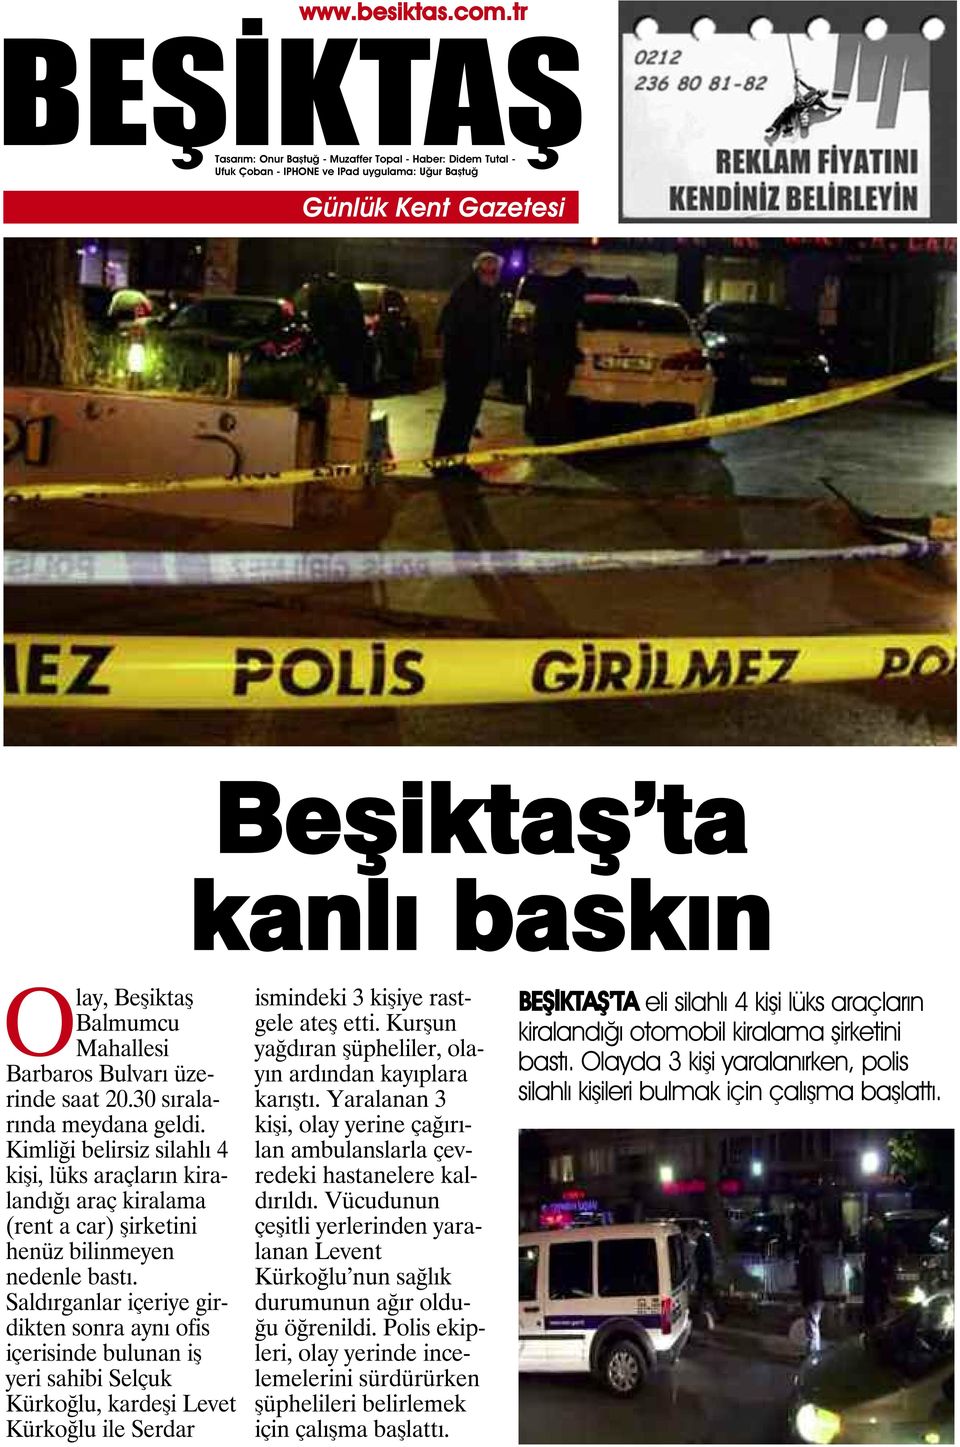 Saldırganlar içeriye girdikten sonra aynı ofis içerisinde bulunan iş yeri sahibi Selçuk Kürkoğlu, kardeşi Levet Kürkoğlu ile Serdar ismindeki 3 kişiye rastgele ateş etti.